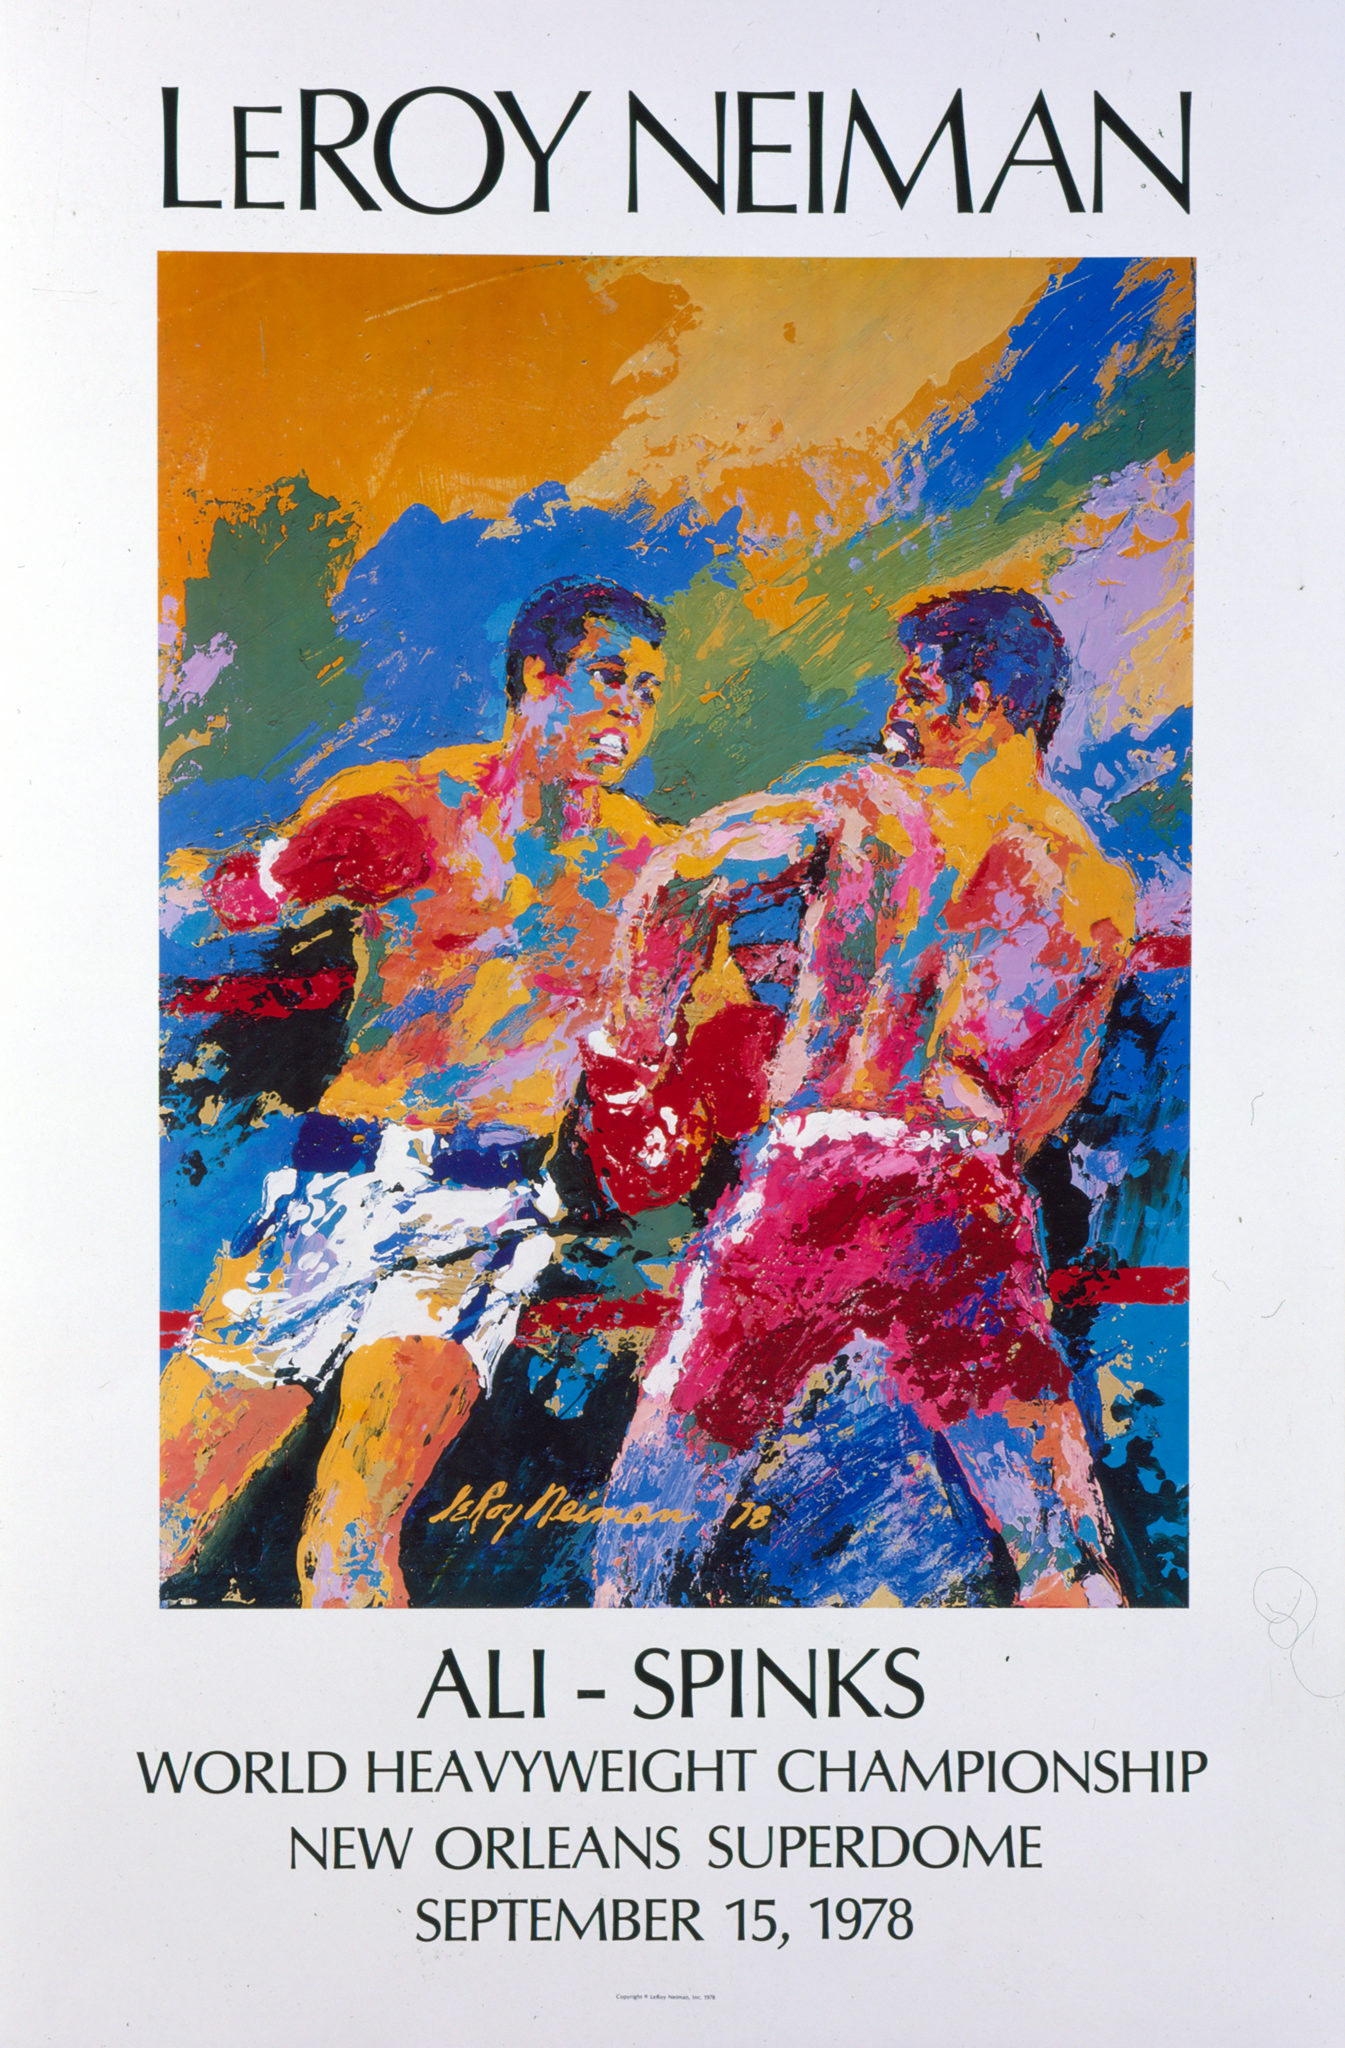 Ali vs. Spinks 1978 Boxing poster